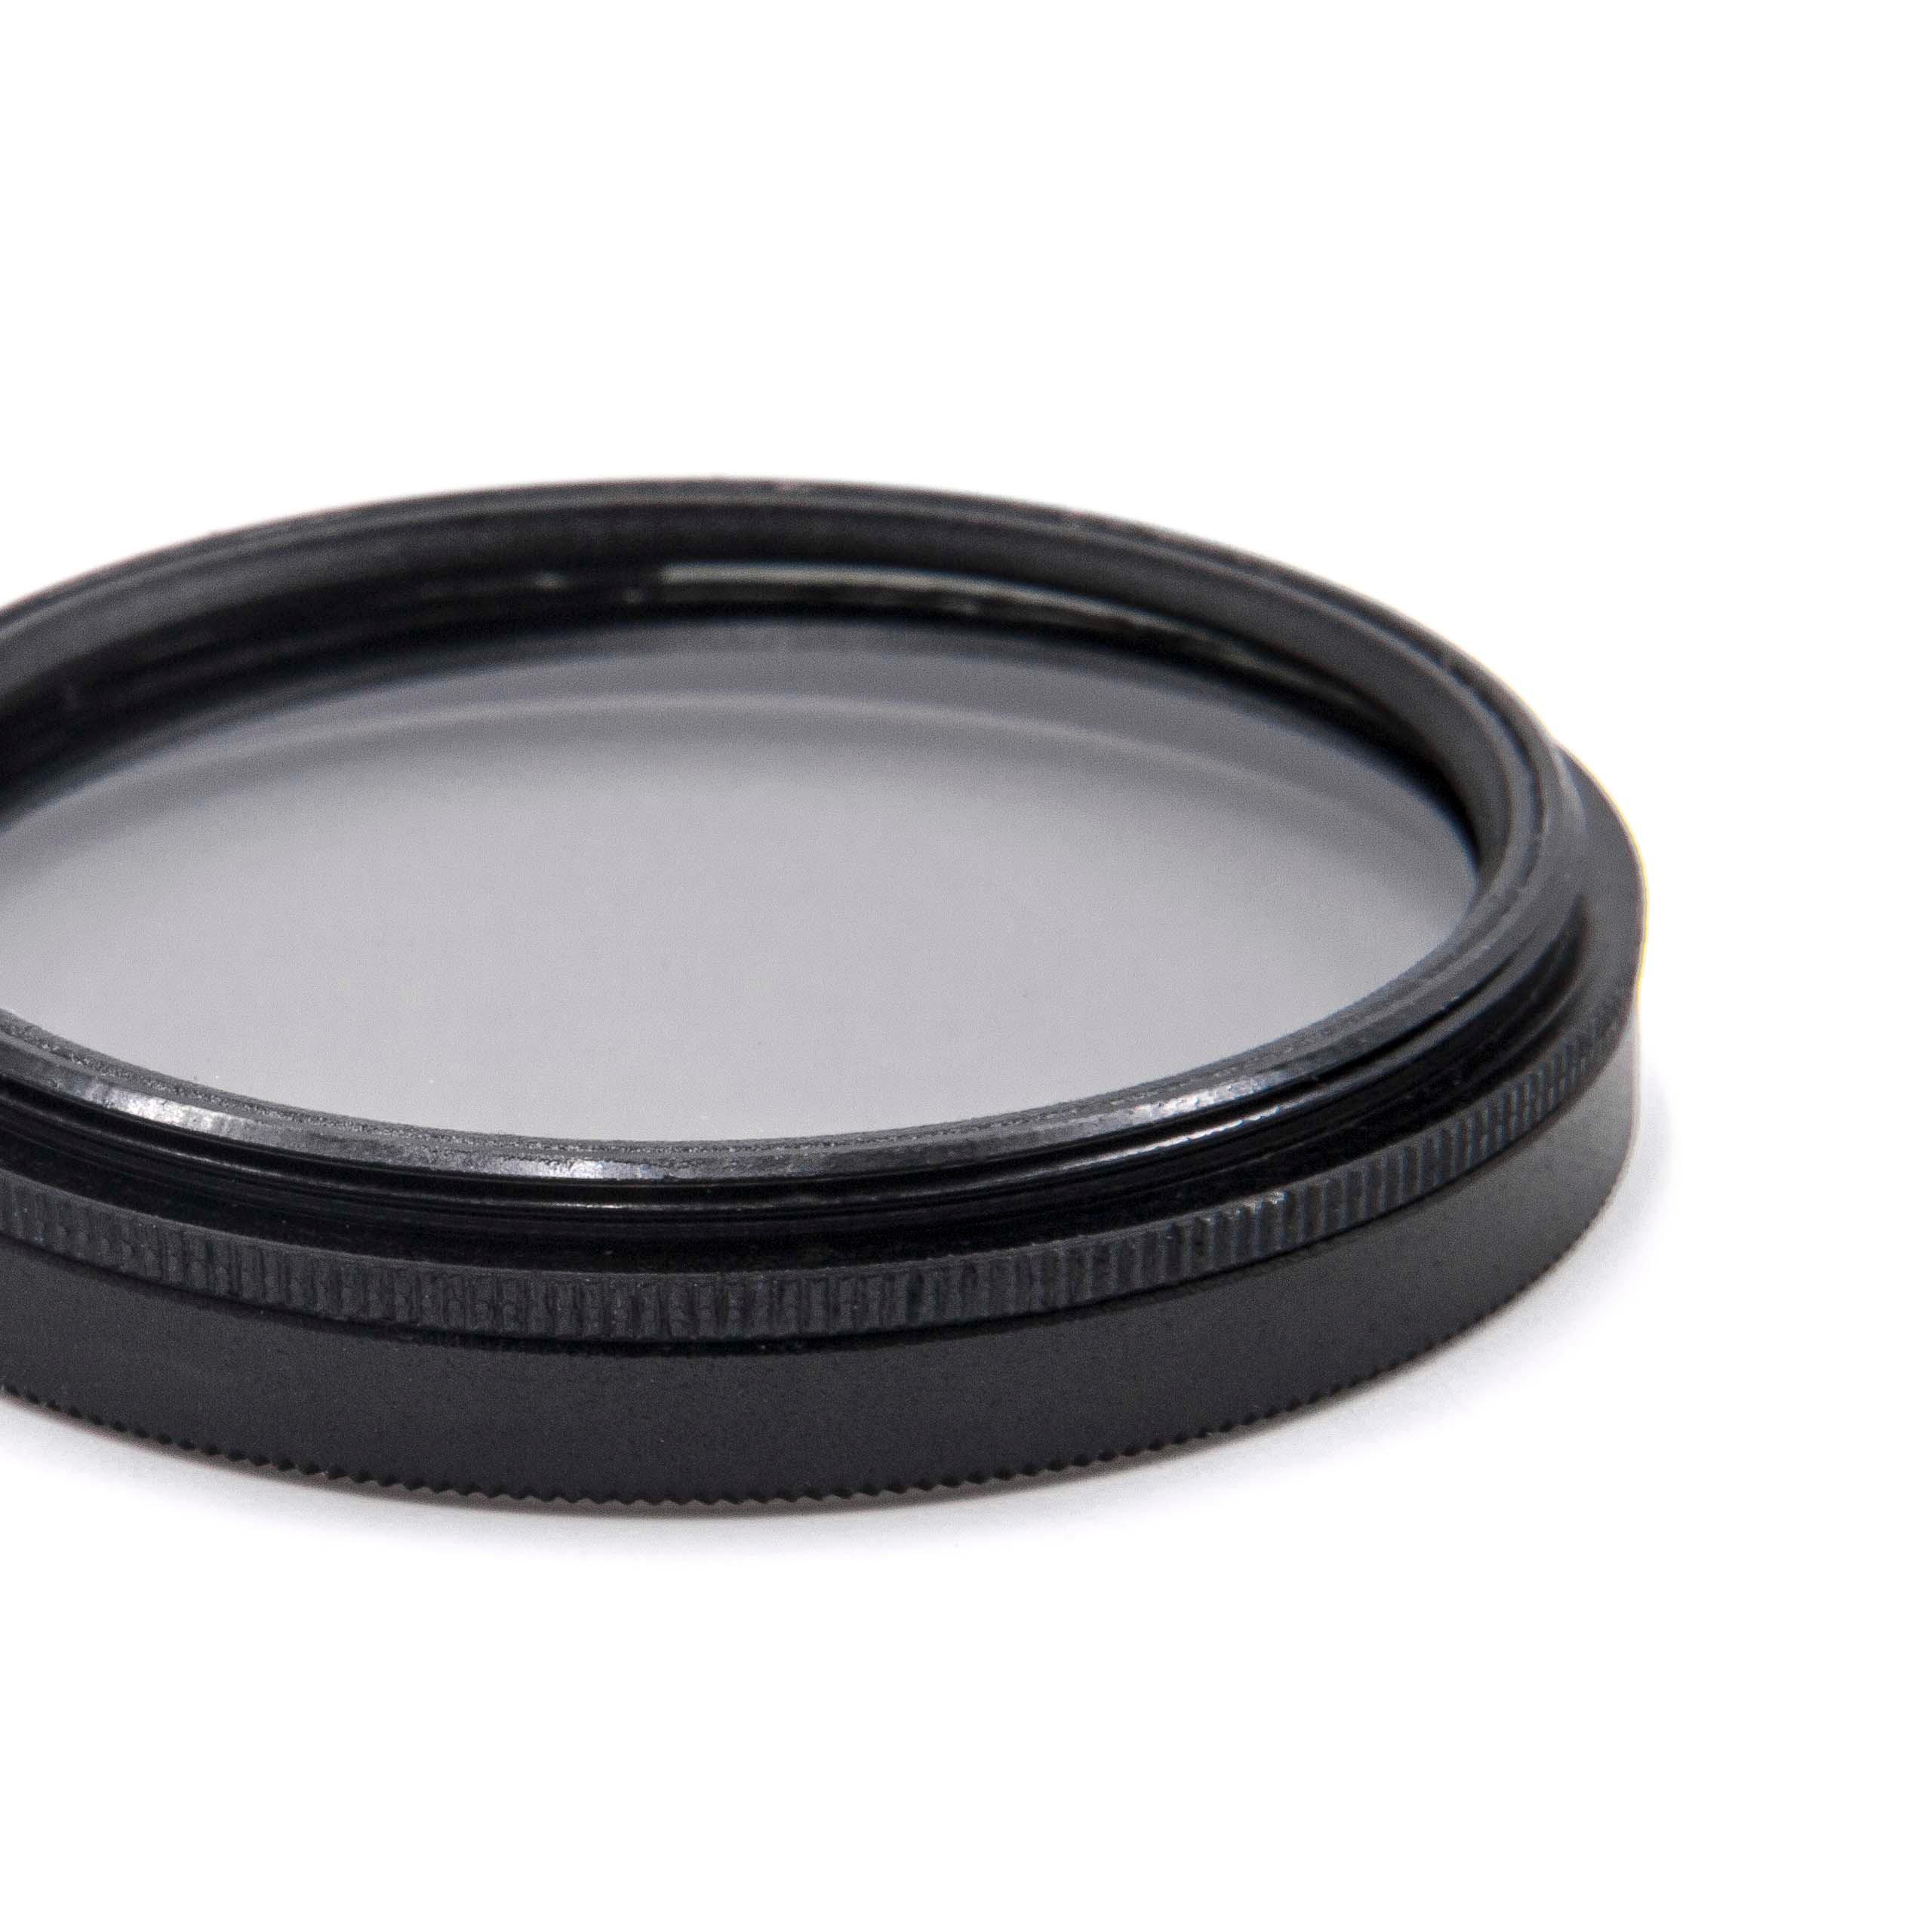 Filtro polarizador para objetivos y cámaras con rosca de filtro de 40,5 mm - Filtro CPL